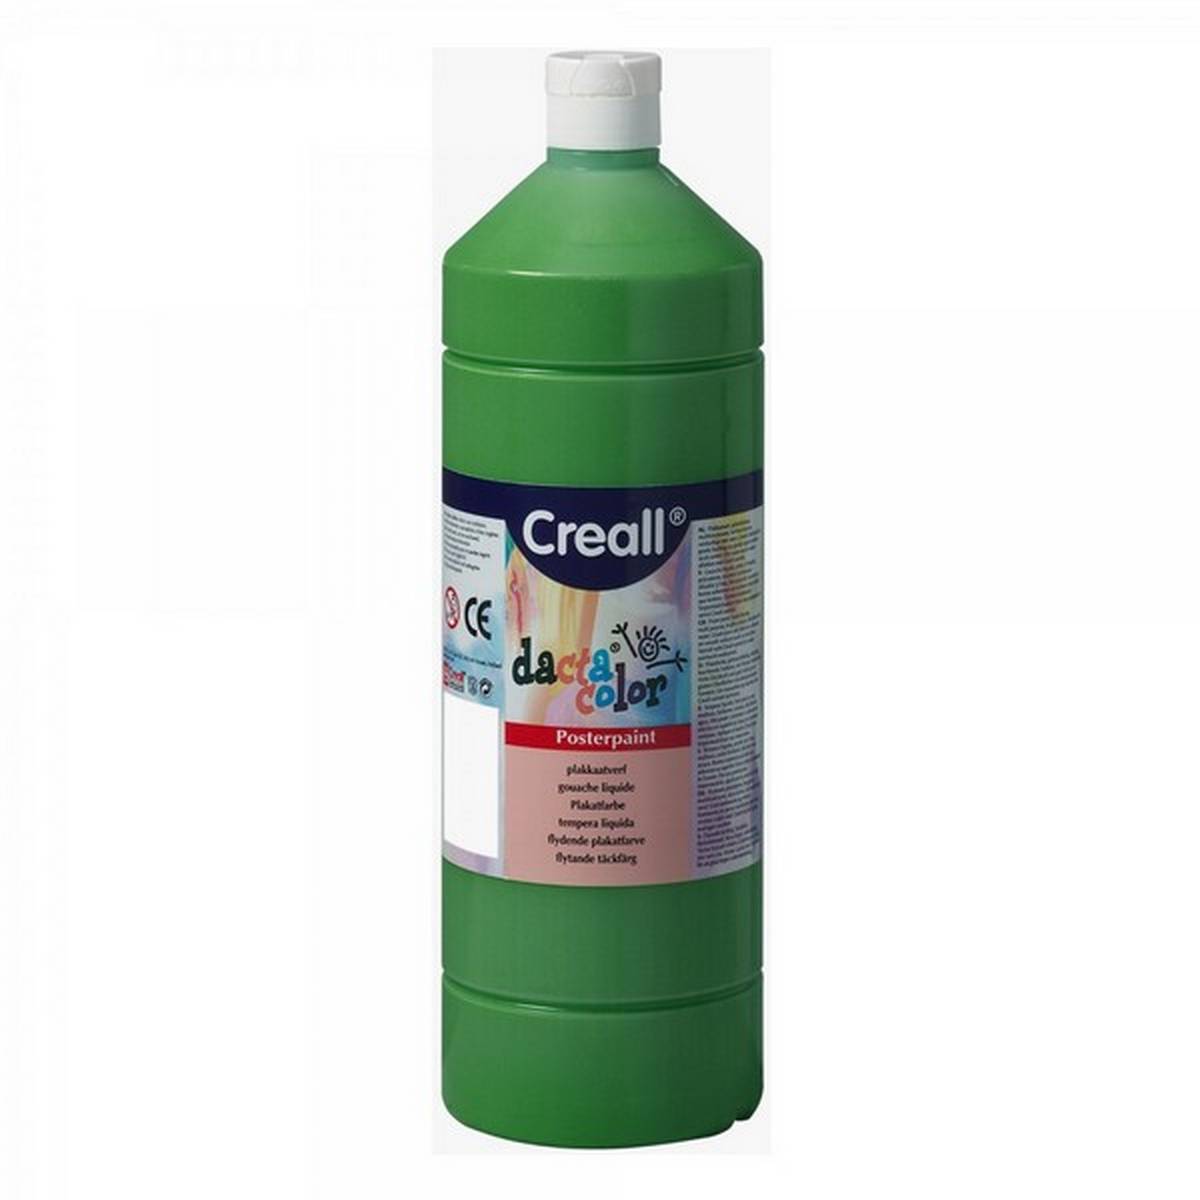 Creall 1 litre Bottle Poster Paint - Green